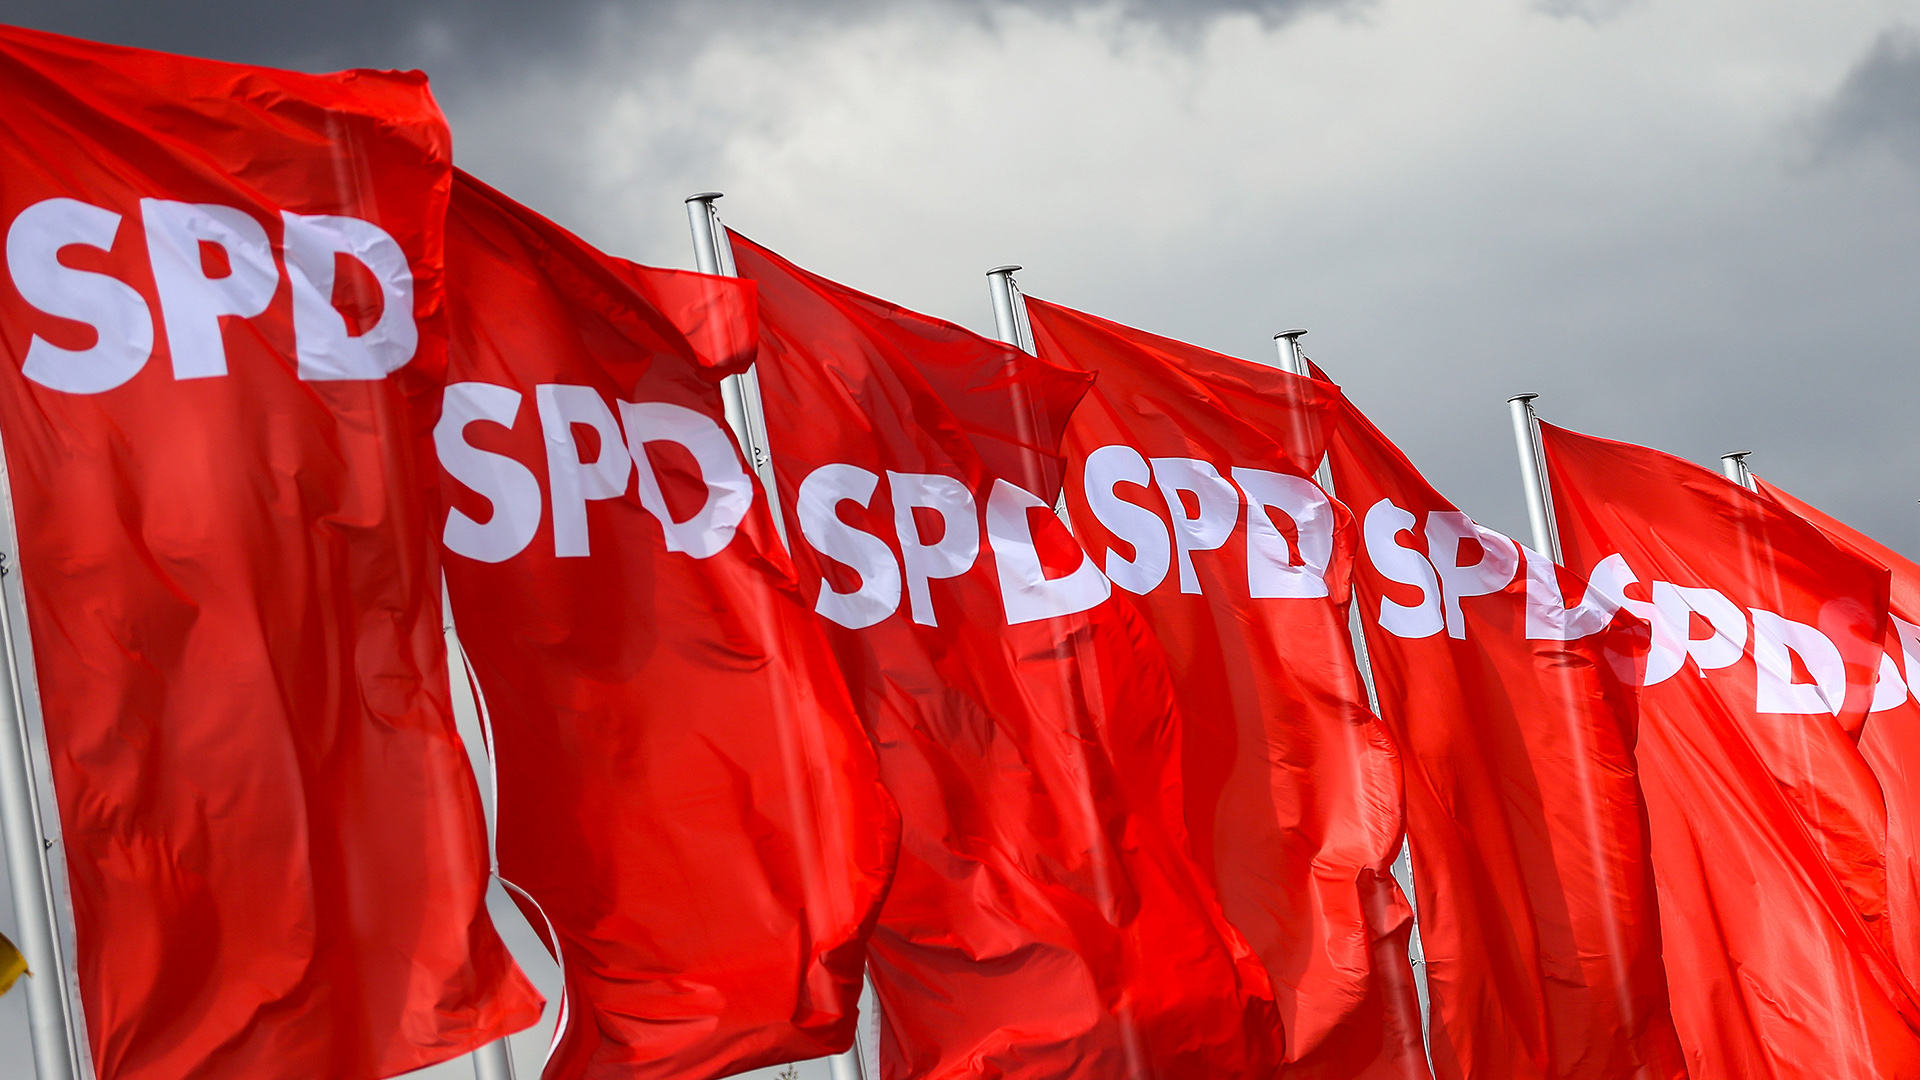 SPD-Fahnen wehen vor dunklen Wolken | dpa